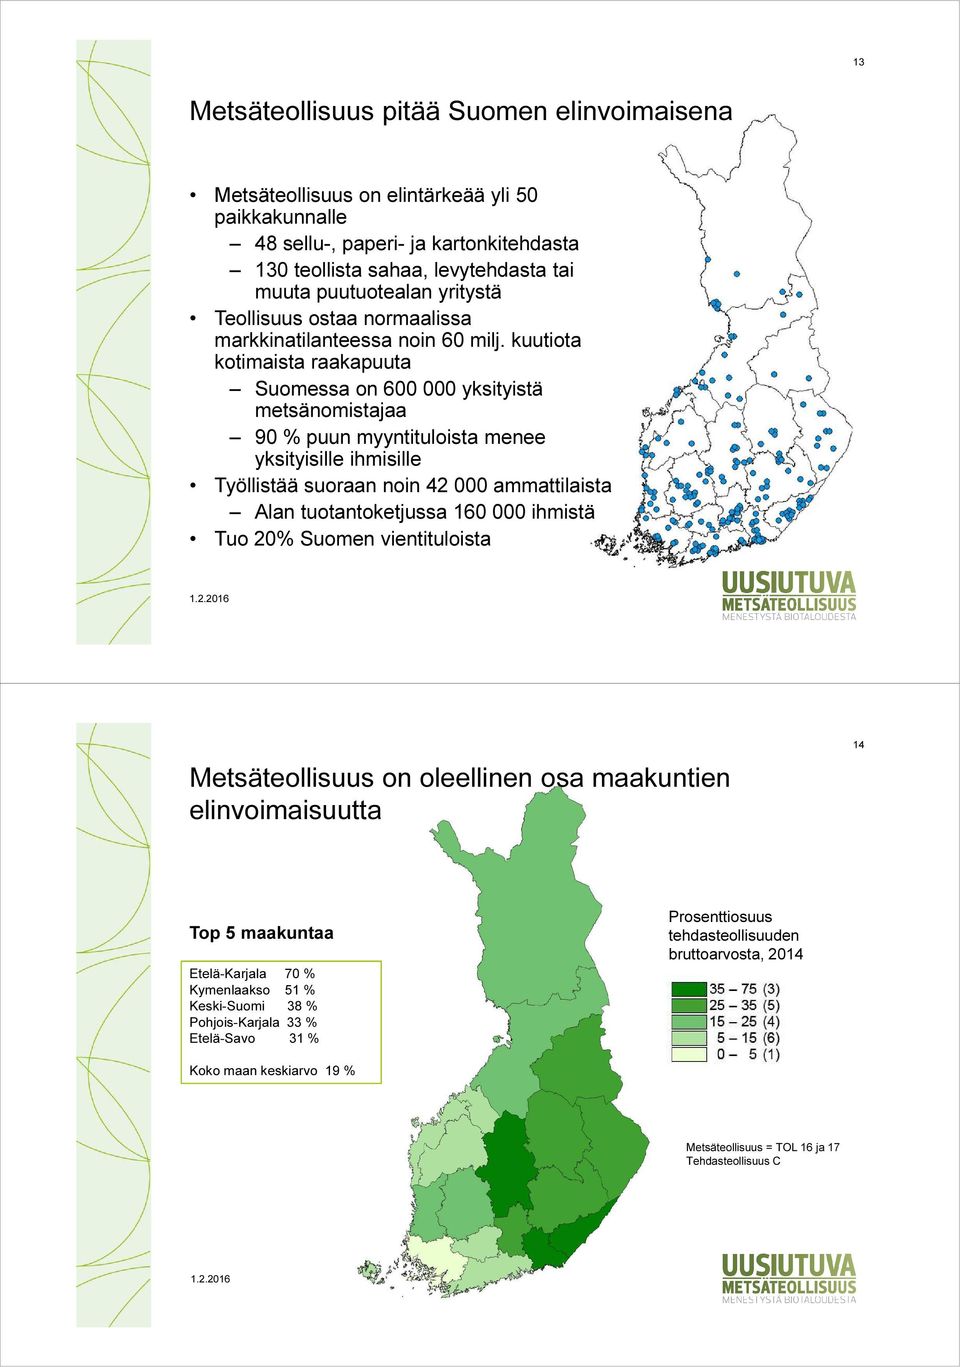 kuutiota kotimaista raakapuuta Suomessa on 600 000 yksityistä metsänomistajaa 90 % puun myyntituloista menee yksityisille ihmisille Työllistää suoraan noin 42 000 ammattilaista Alan tuotantoketjussa